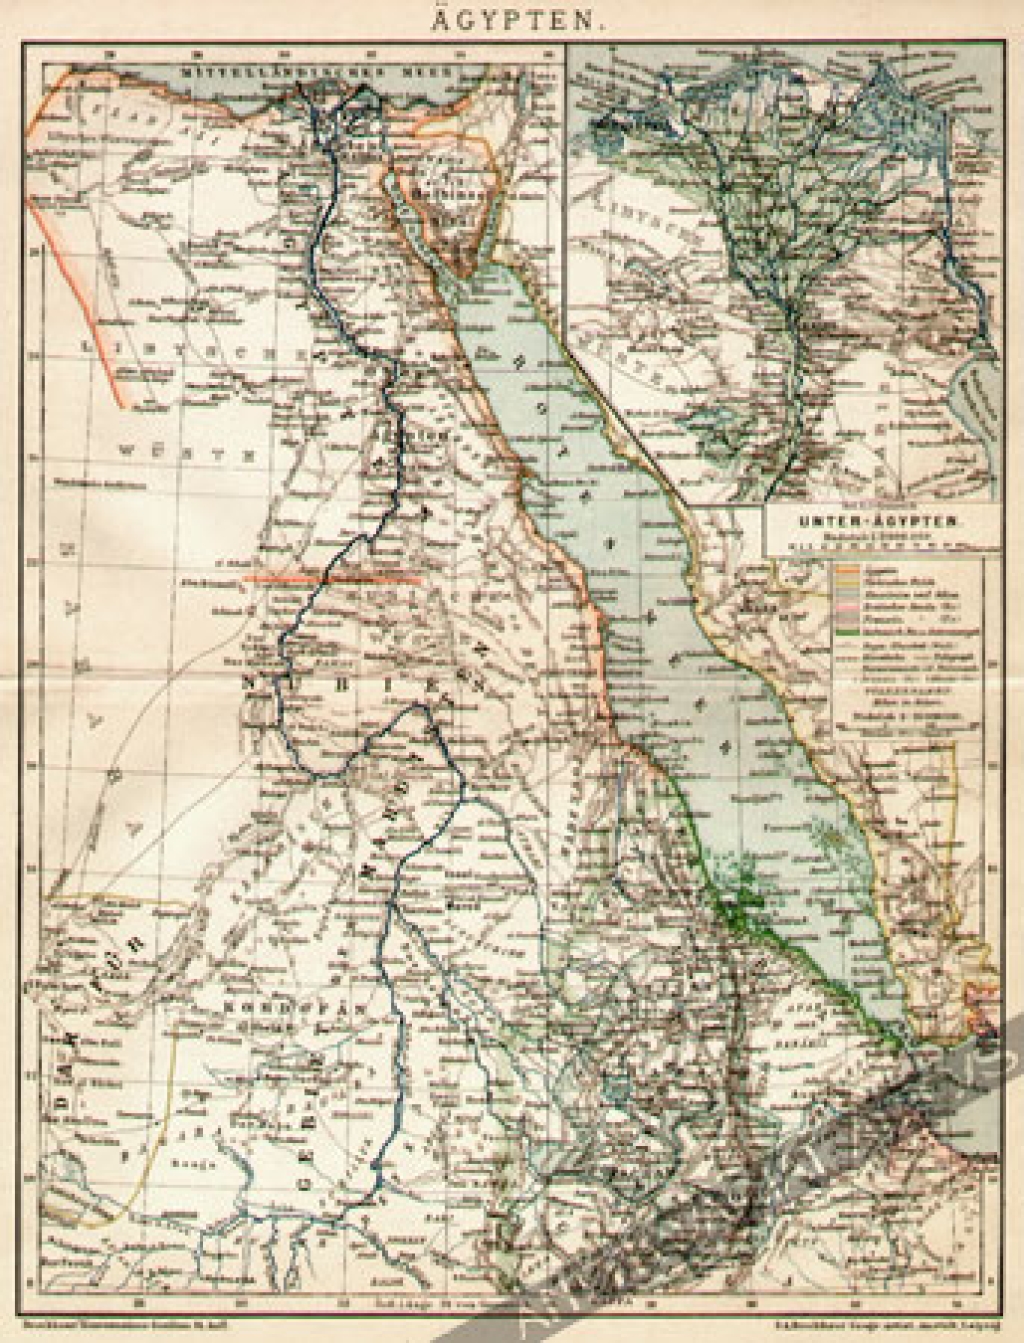 [mapa, 1900] Agypten [Egipt]